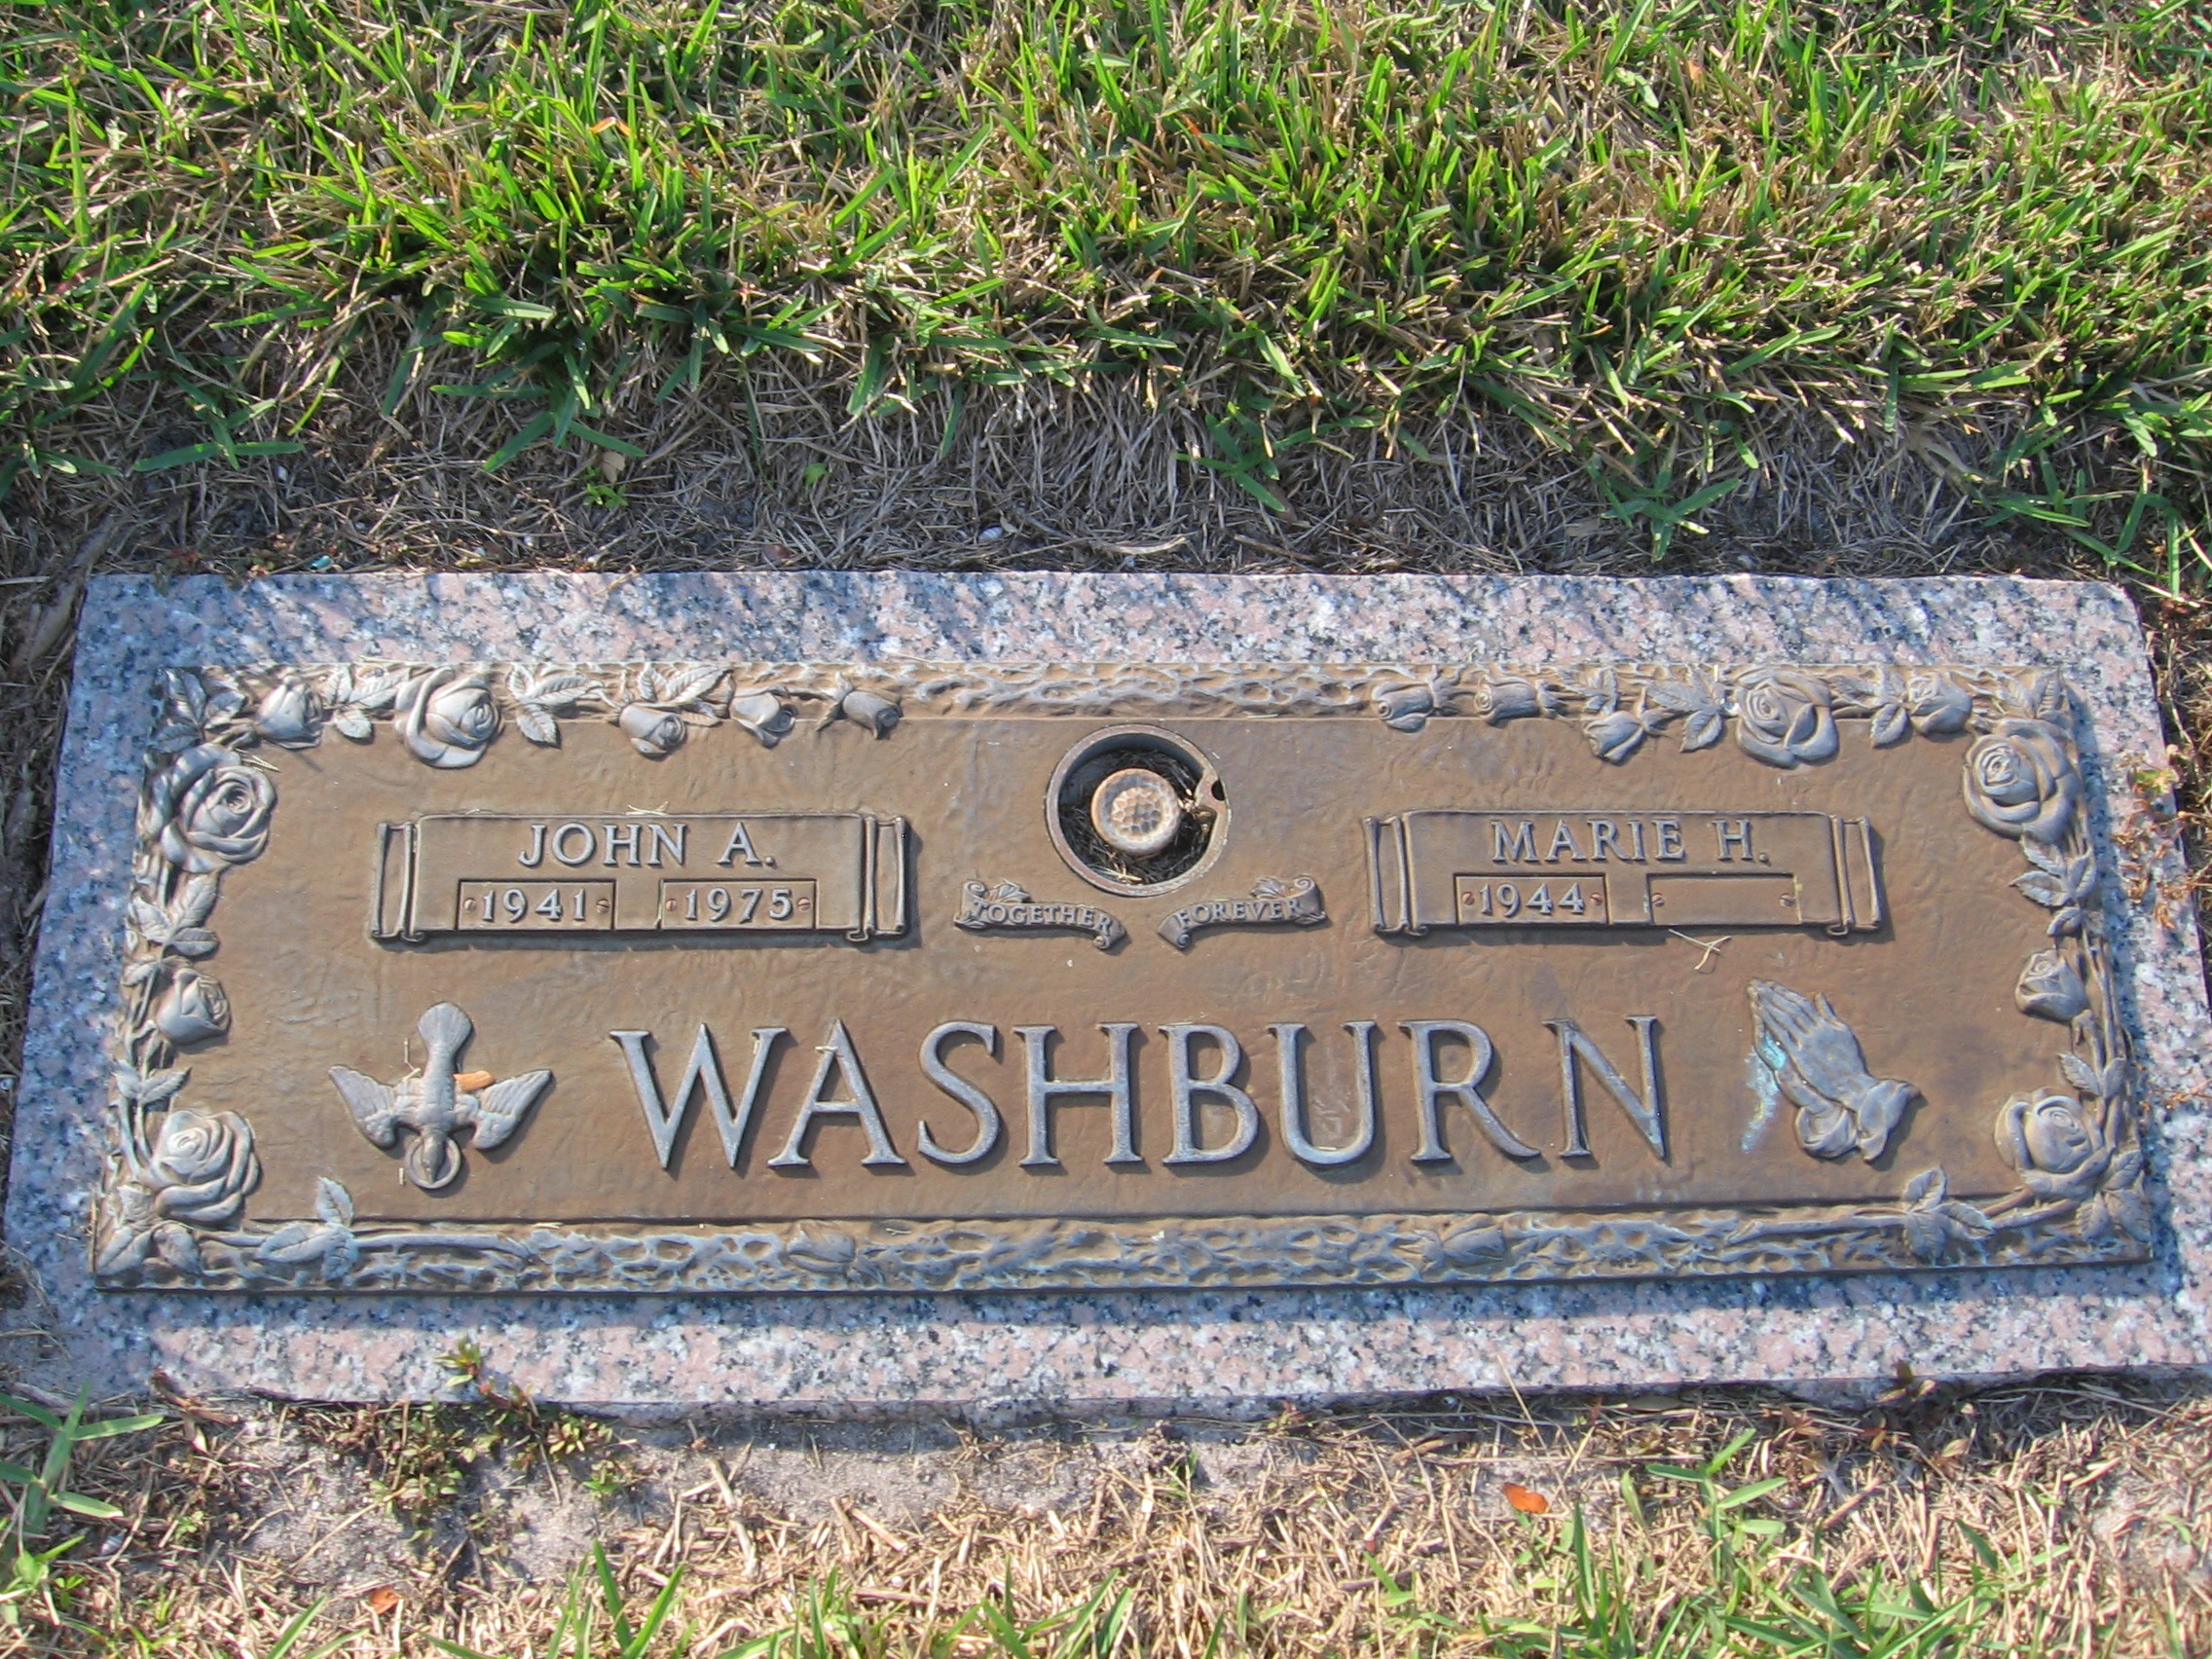 John A Washburn